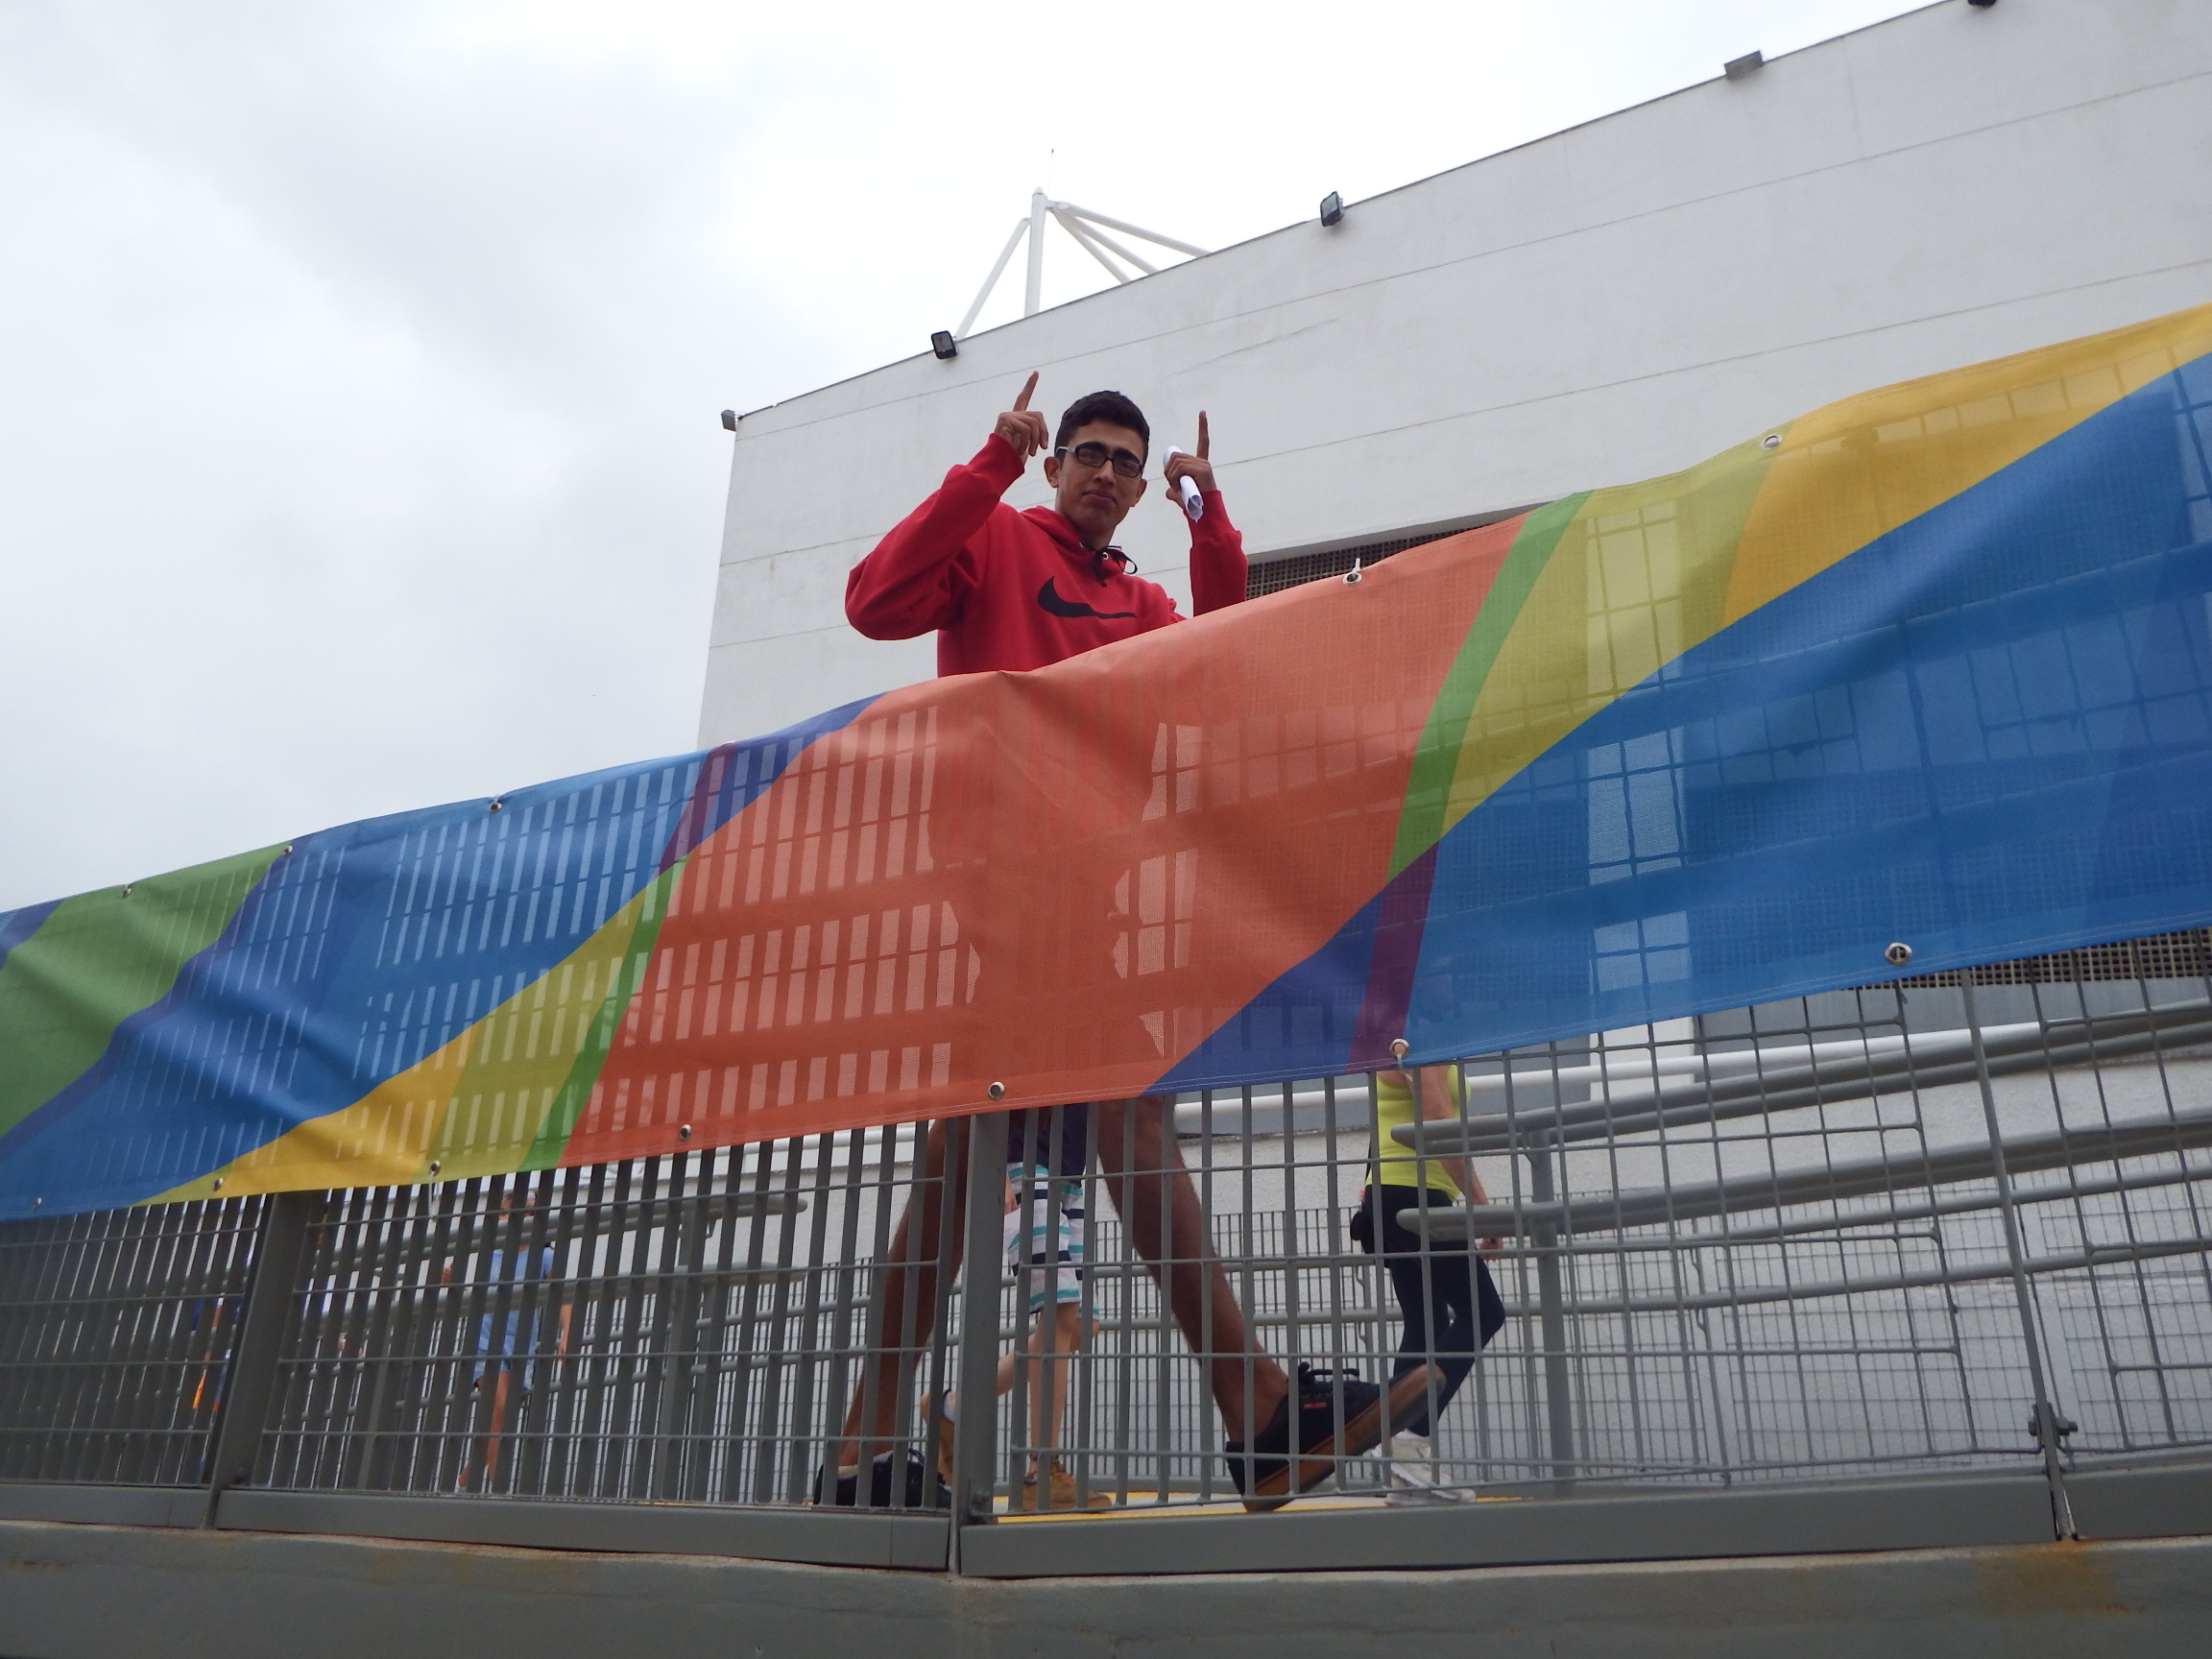 Passeio Pedagógico - Paralímpiadas  Rio 2016